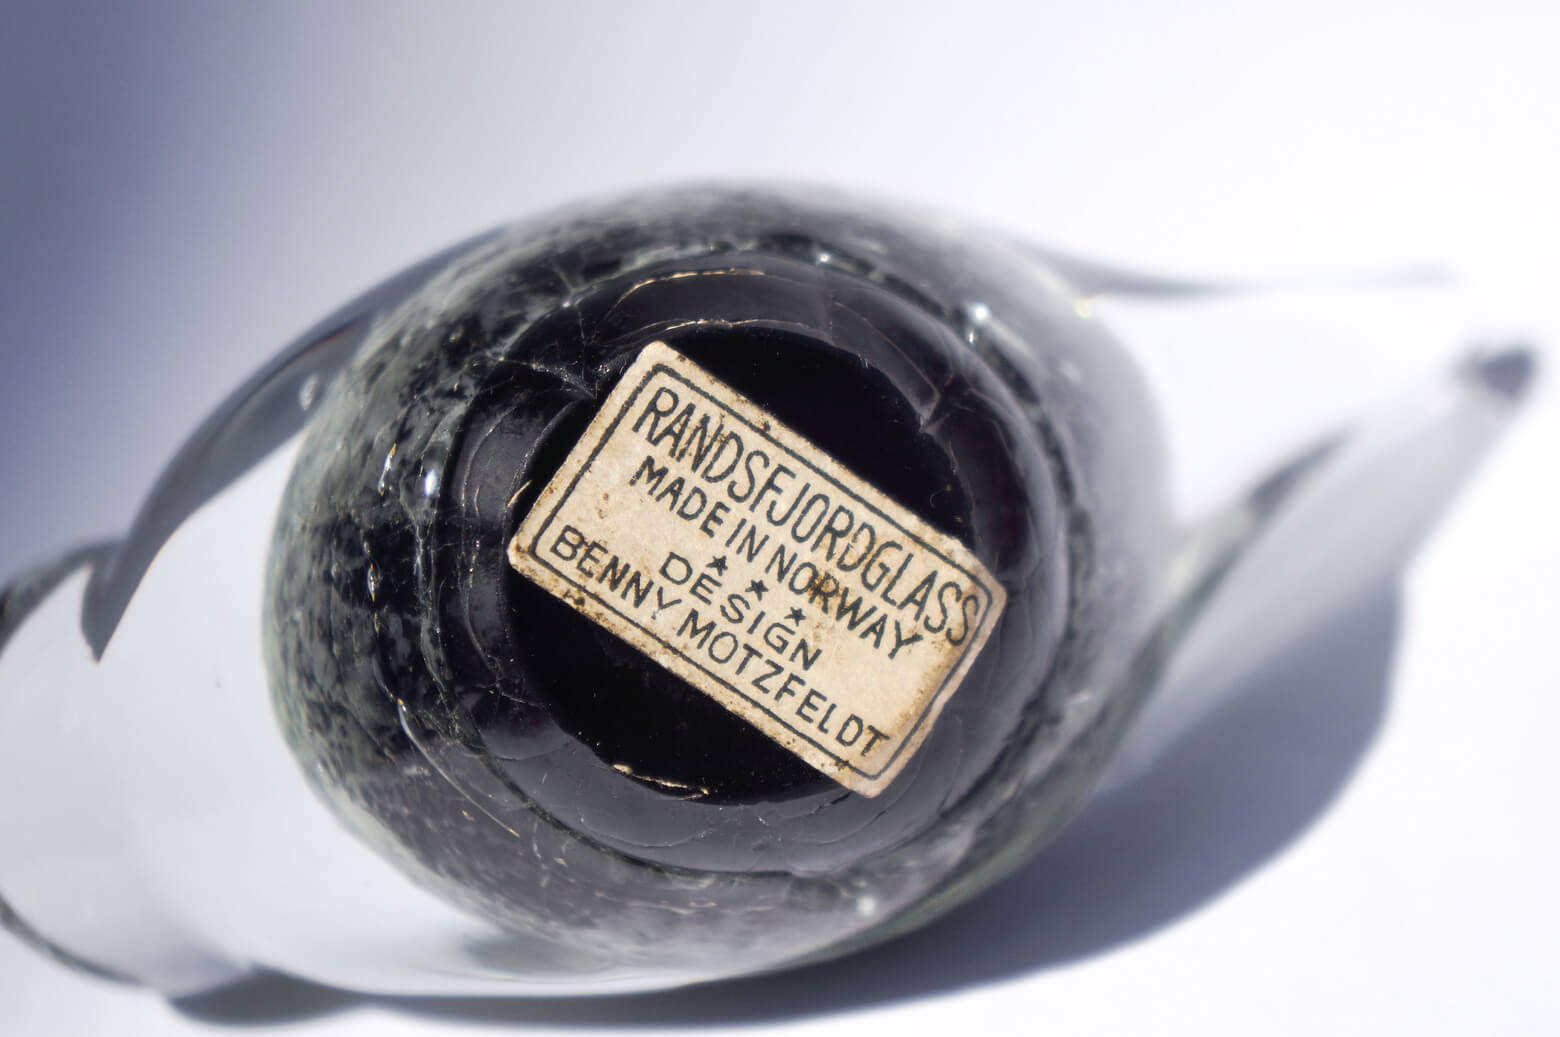 Randsfjord Glass Bird Object designed by Benny Motzfeldt/ランズフィオルド グラスベルグ ガラス 鳥のオブジェ ベンニー・モルツフェルト ノルウェー 北欧雑貨 ブラック